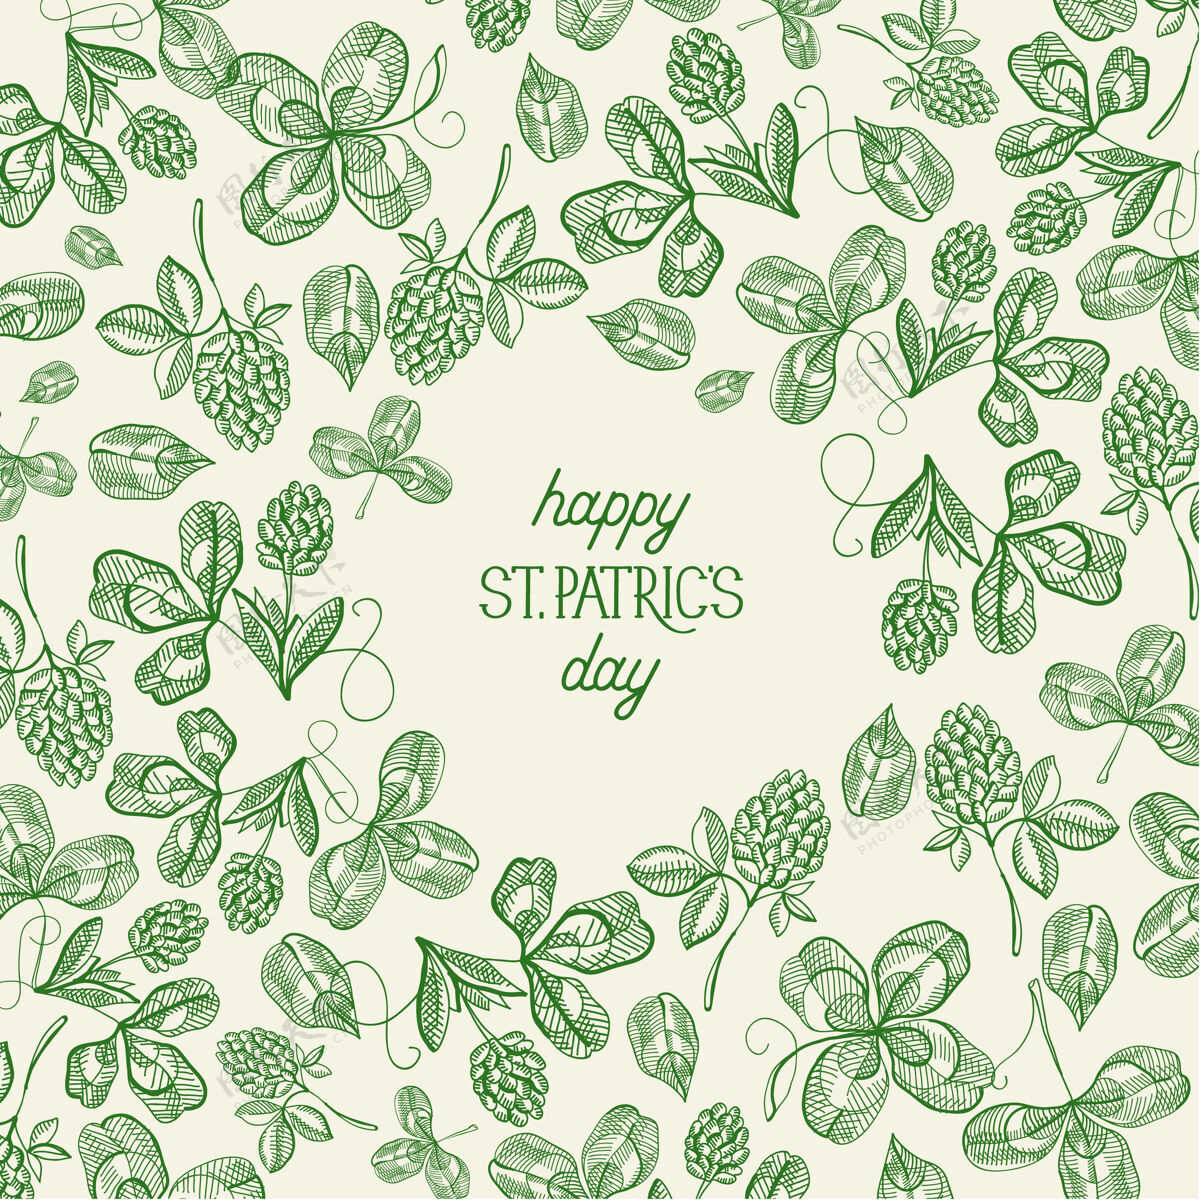 印刷复古圣帕特里克日绿色模板与铭文素描爱尔兰三叶草和四叶草矢量插图传统圣帕特里克